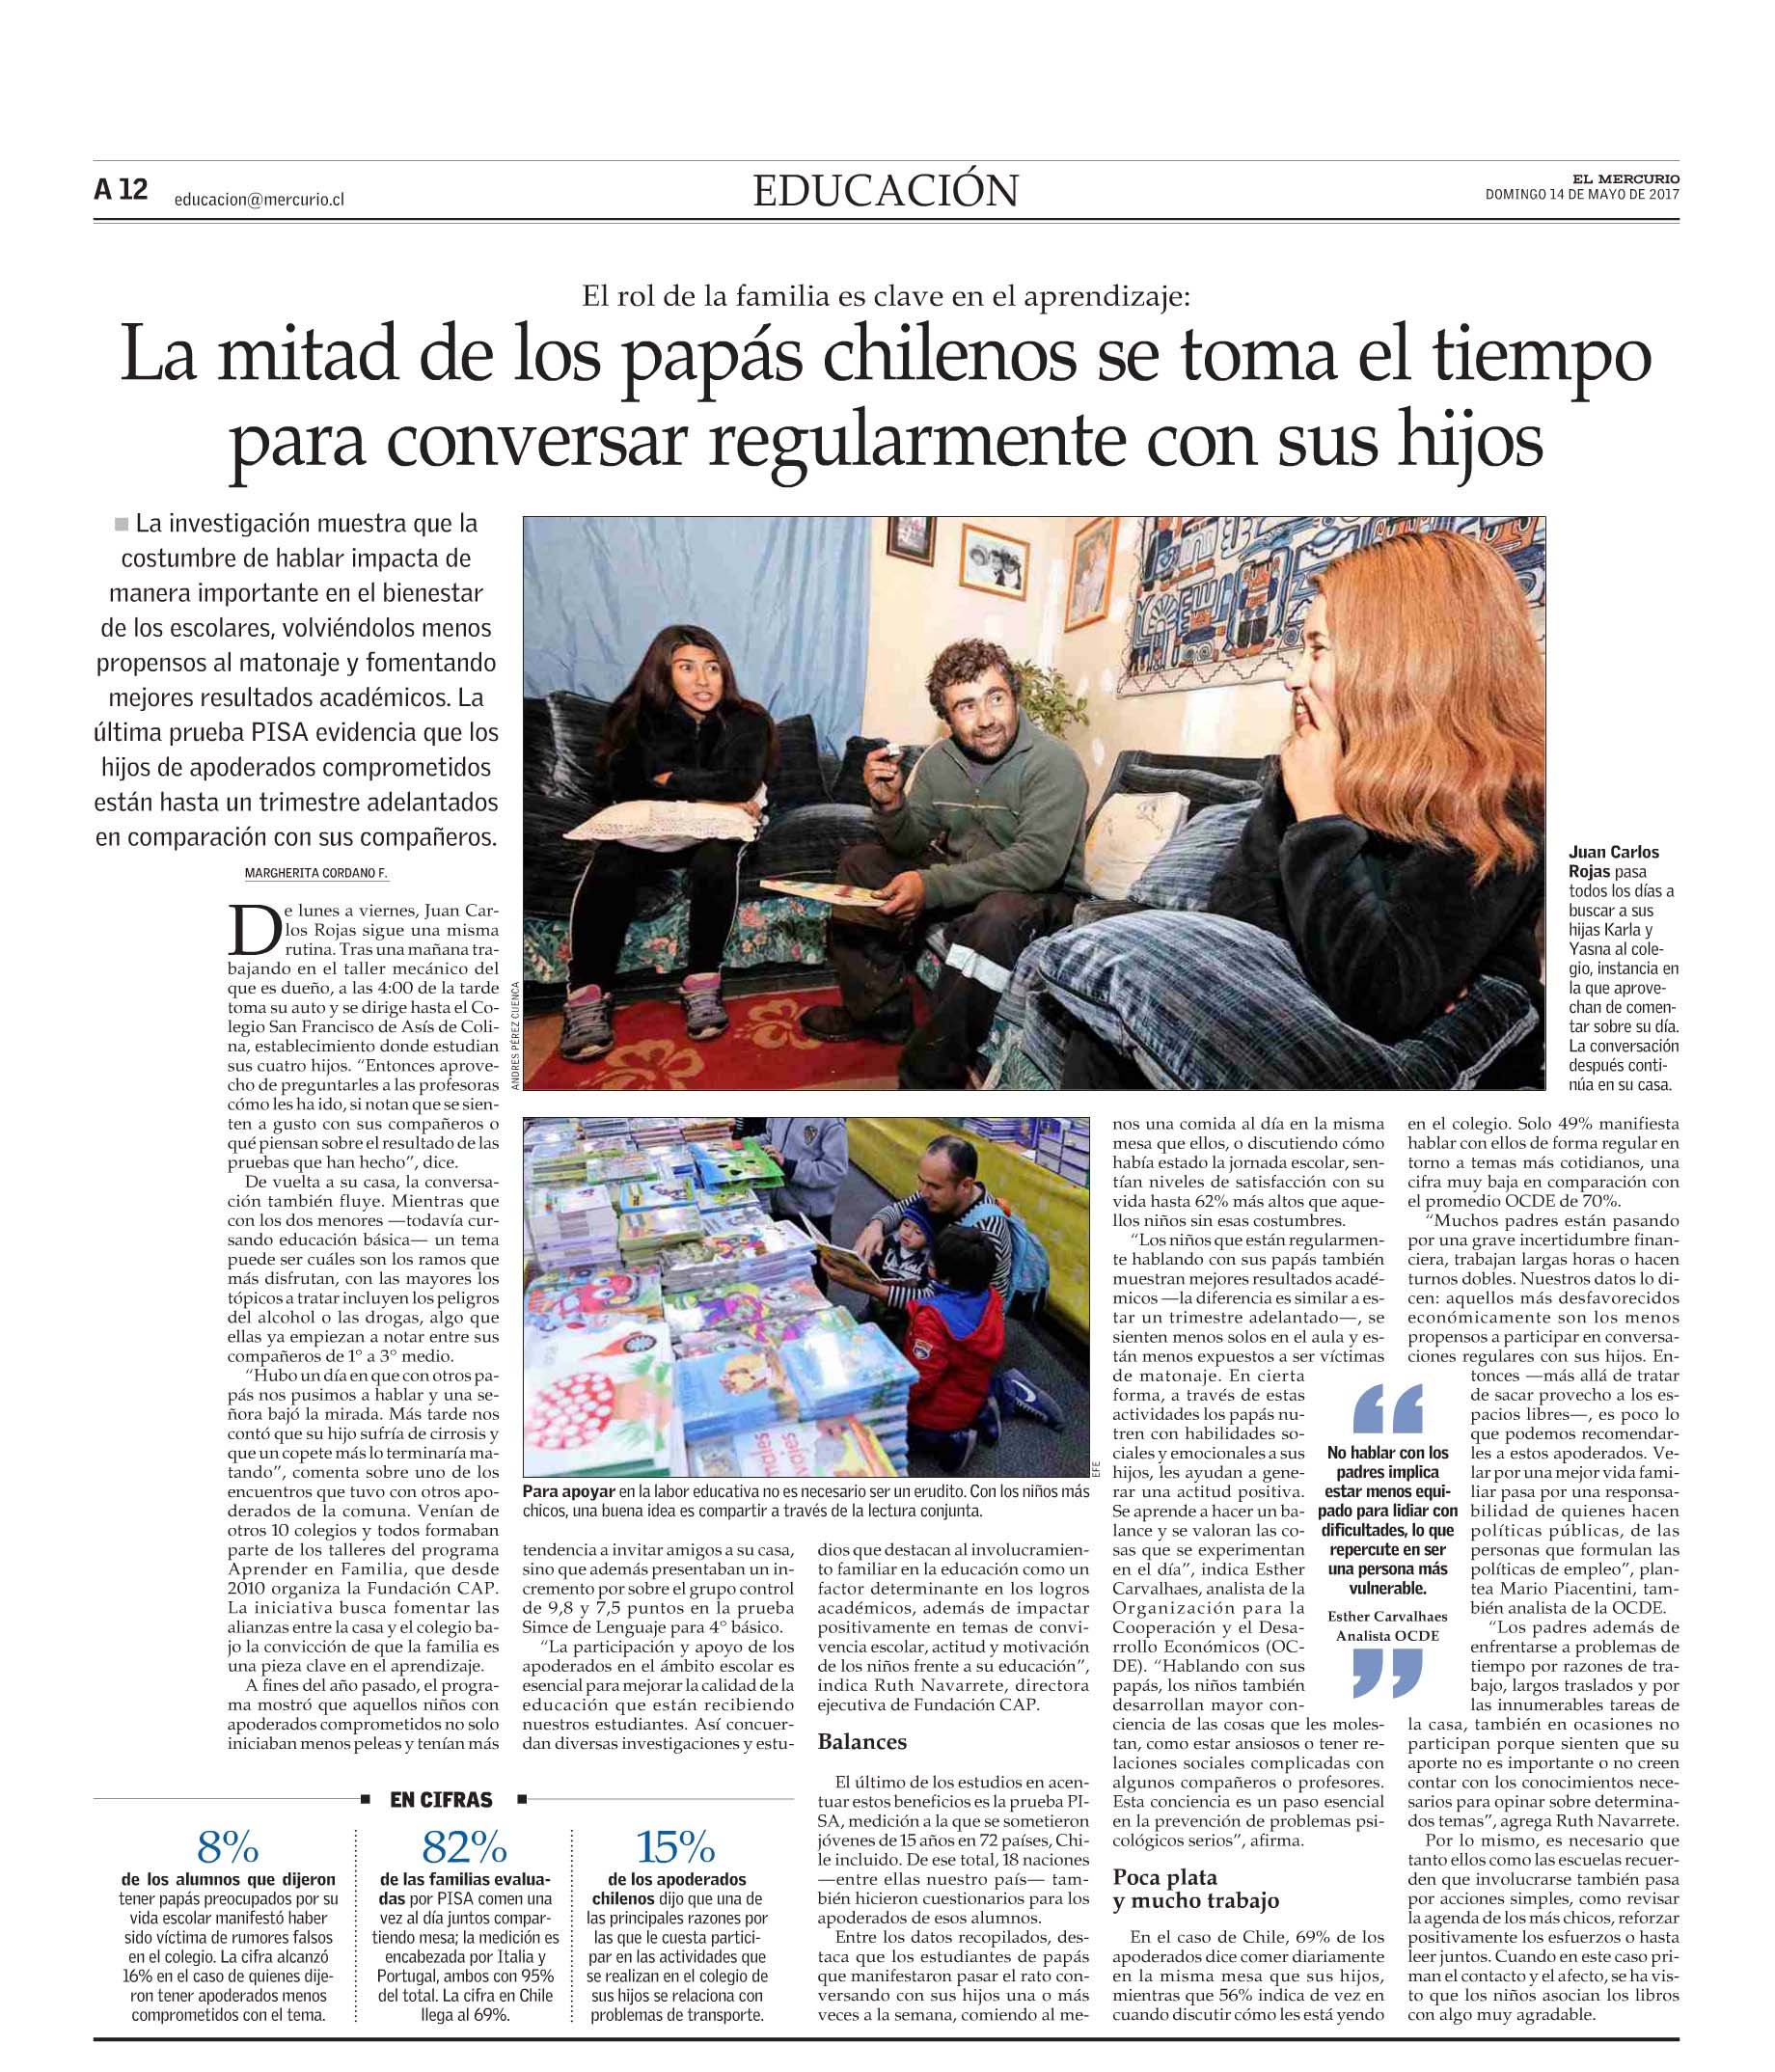 El Mercurio, Educación, domingo 14 de mayo de 2017